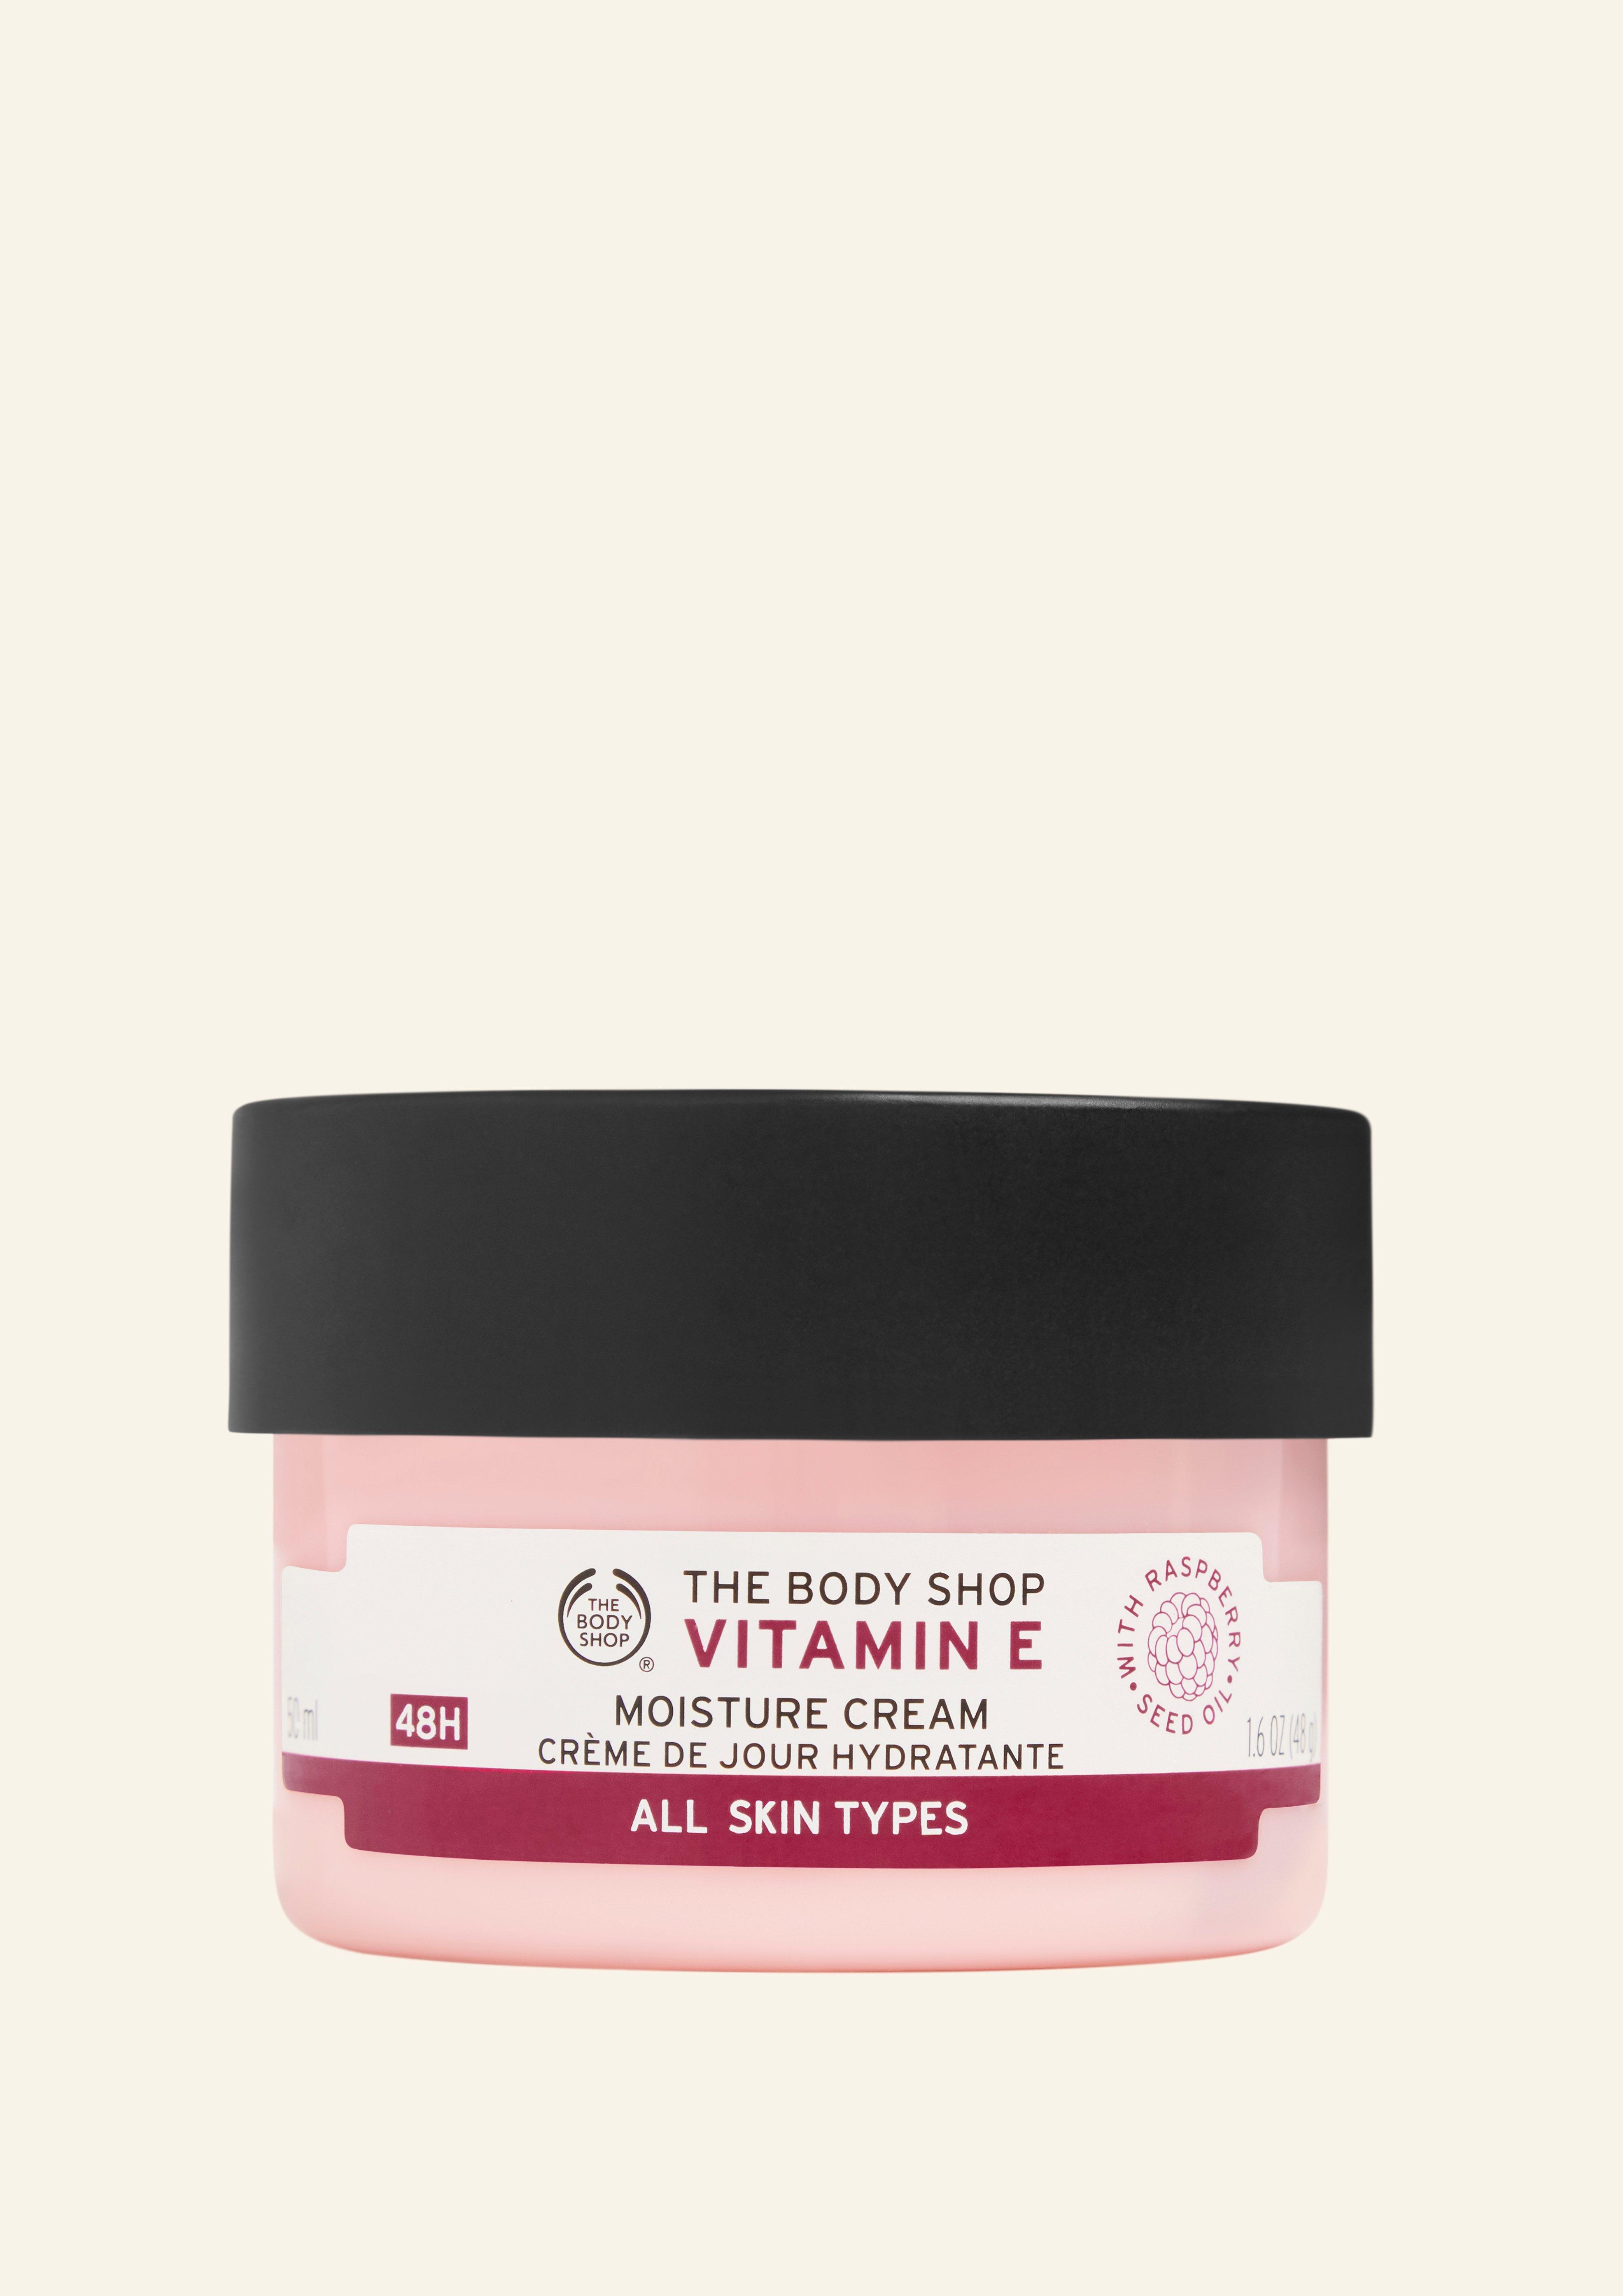 Vitamin E Moisture Cream The Body Shop